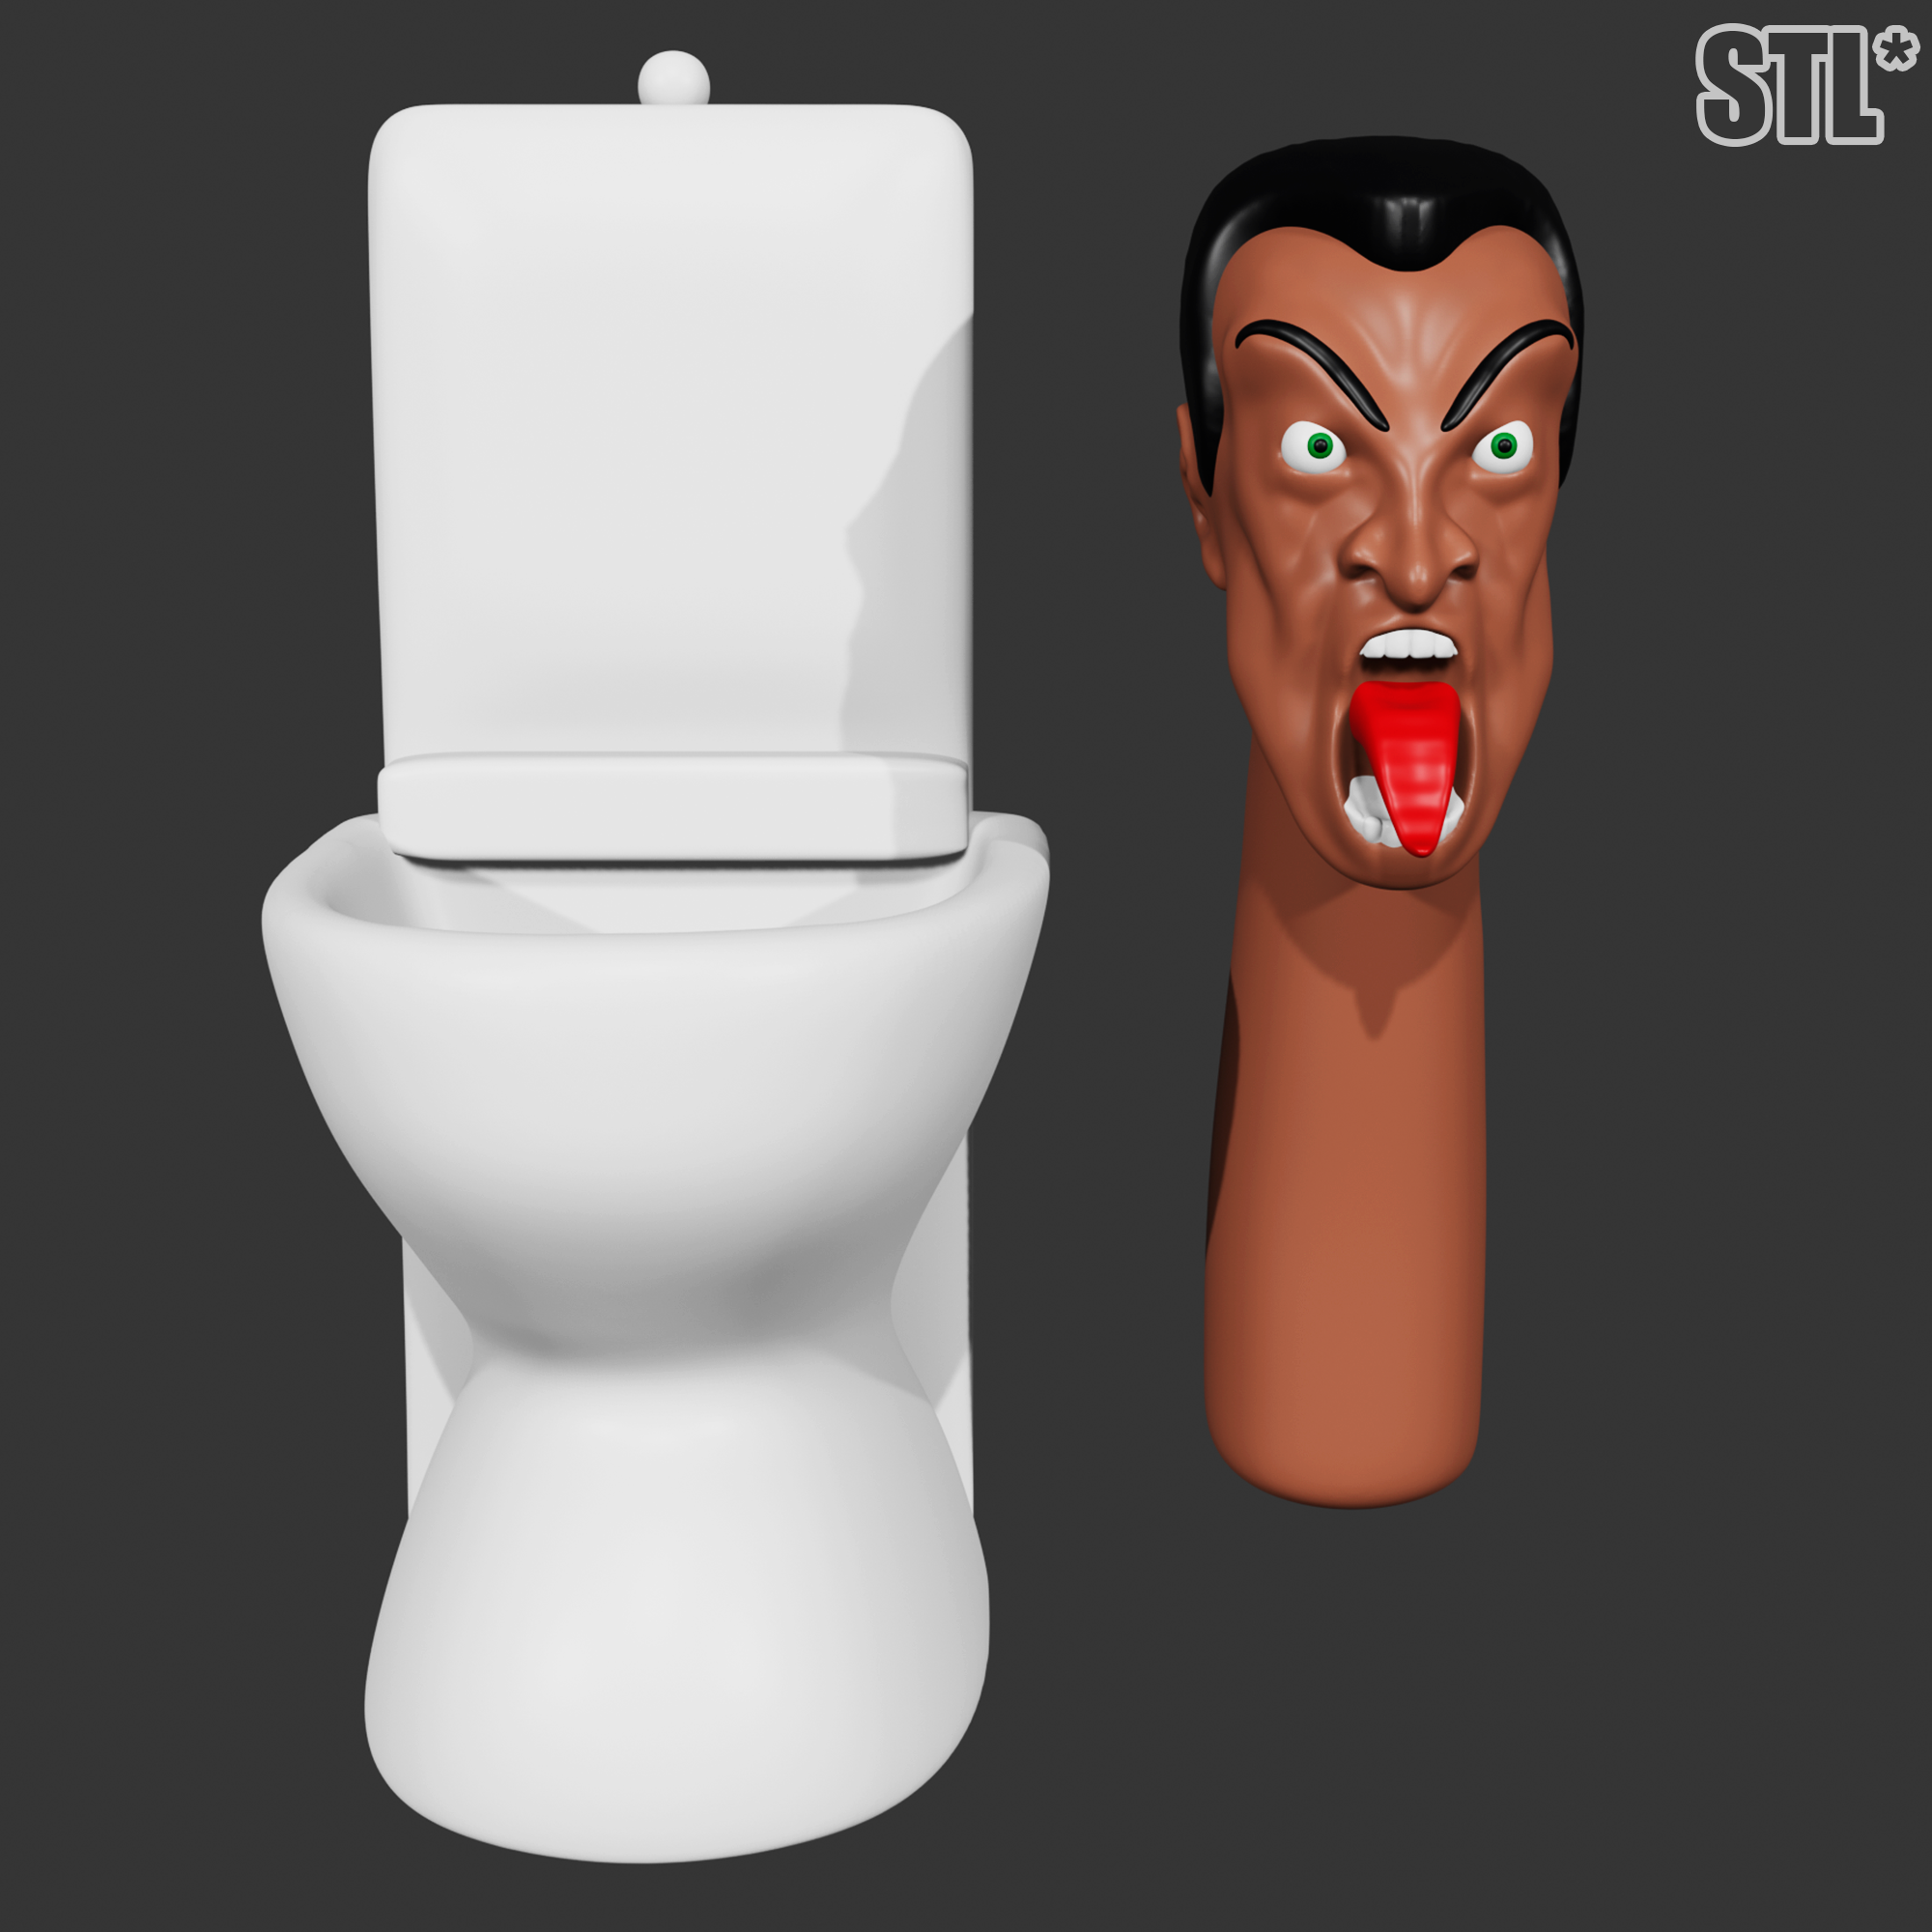 Skibidi Toilet G man | Poster